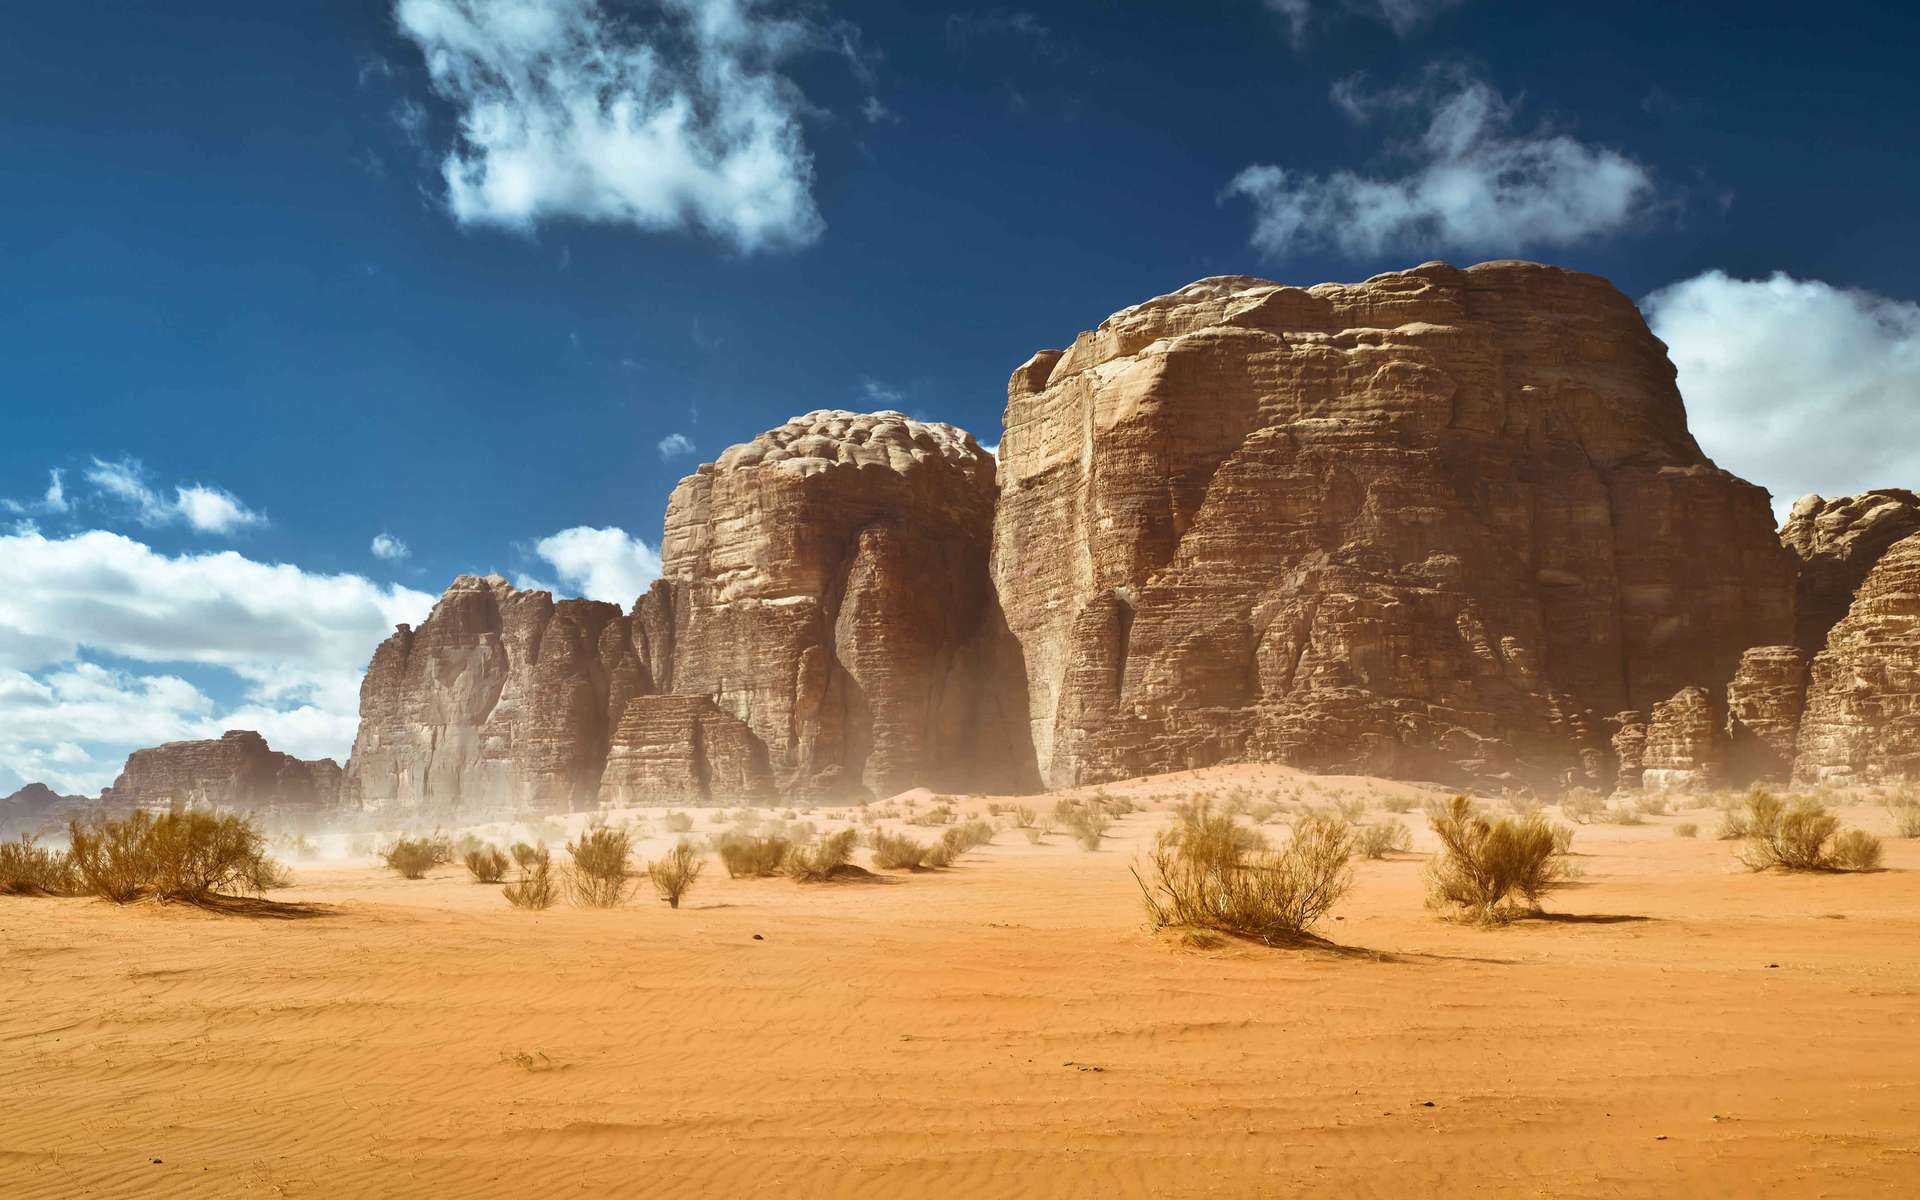 Le désert de Jordanie peut être difficile pour effectuer des fouilles archéologiques mais lorsque celles-ci sont possibles, les découvertes sont incroyables, comme celle d'un site préhistorique servant à chasser des gazelles. © ledokol.ua, Adobe Stock